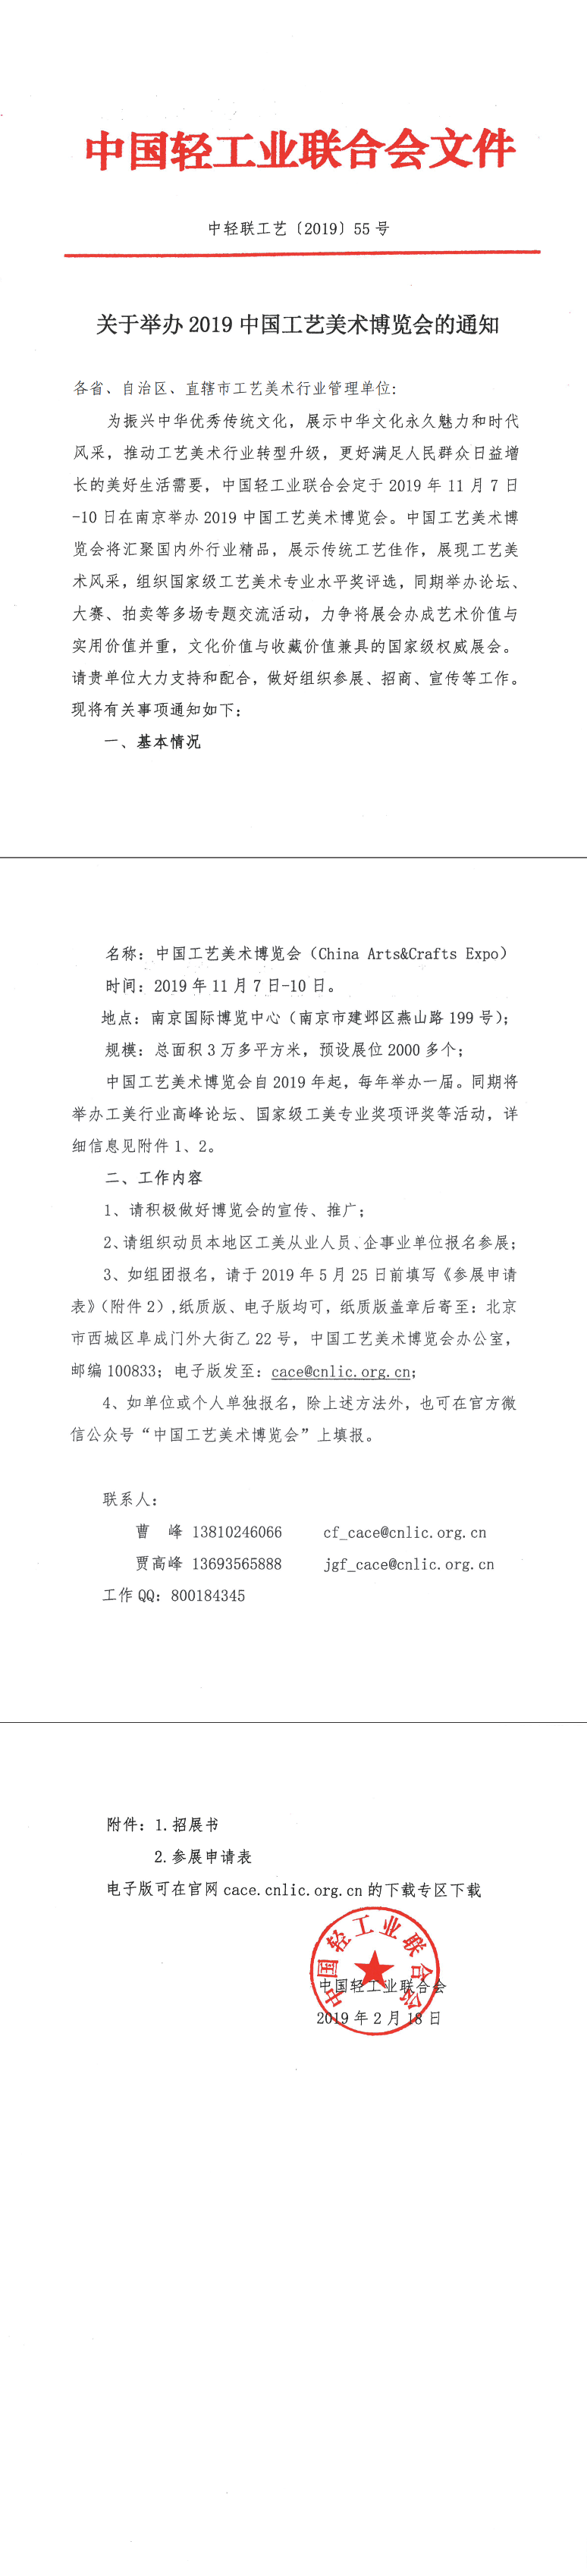 关于举办2019中国工艺美术博览会的通知_1.png